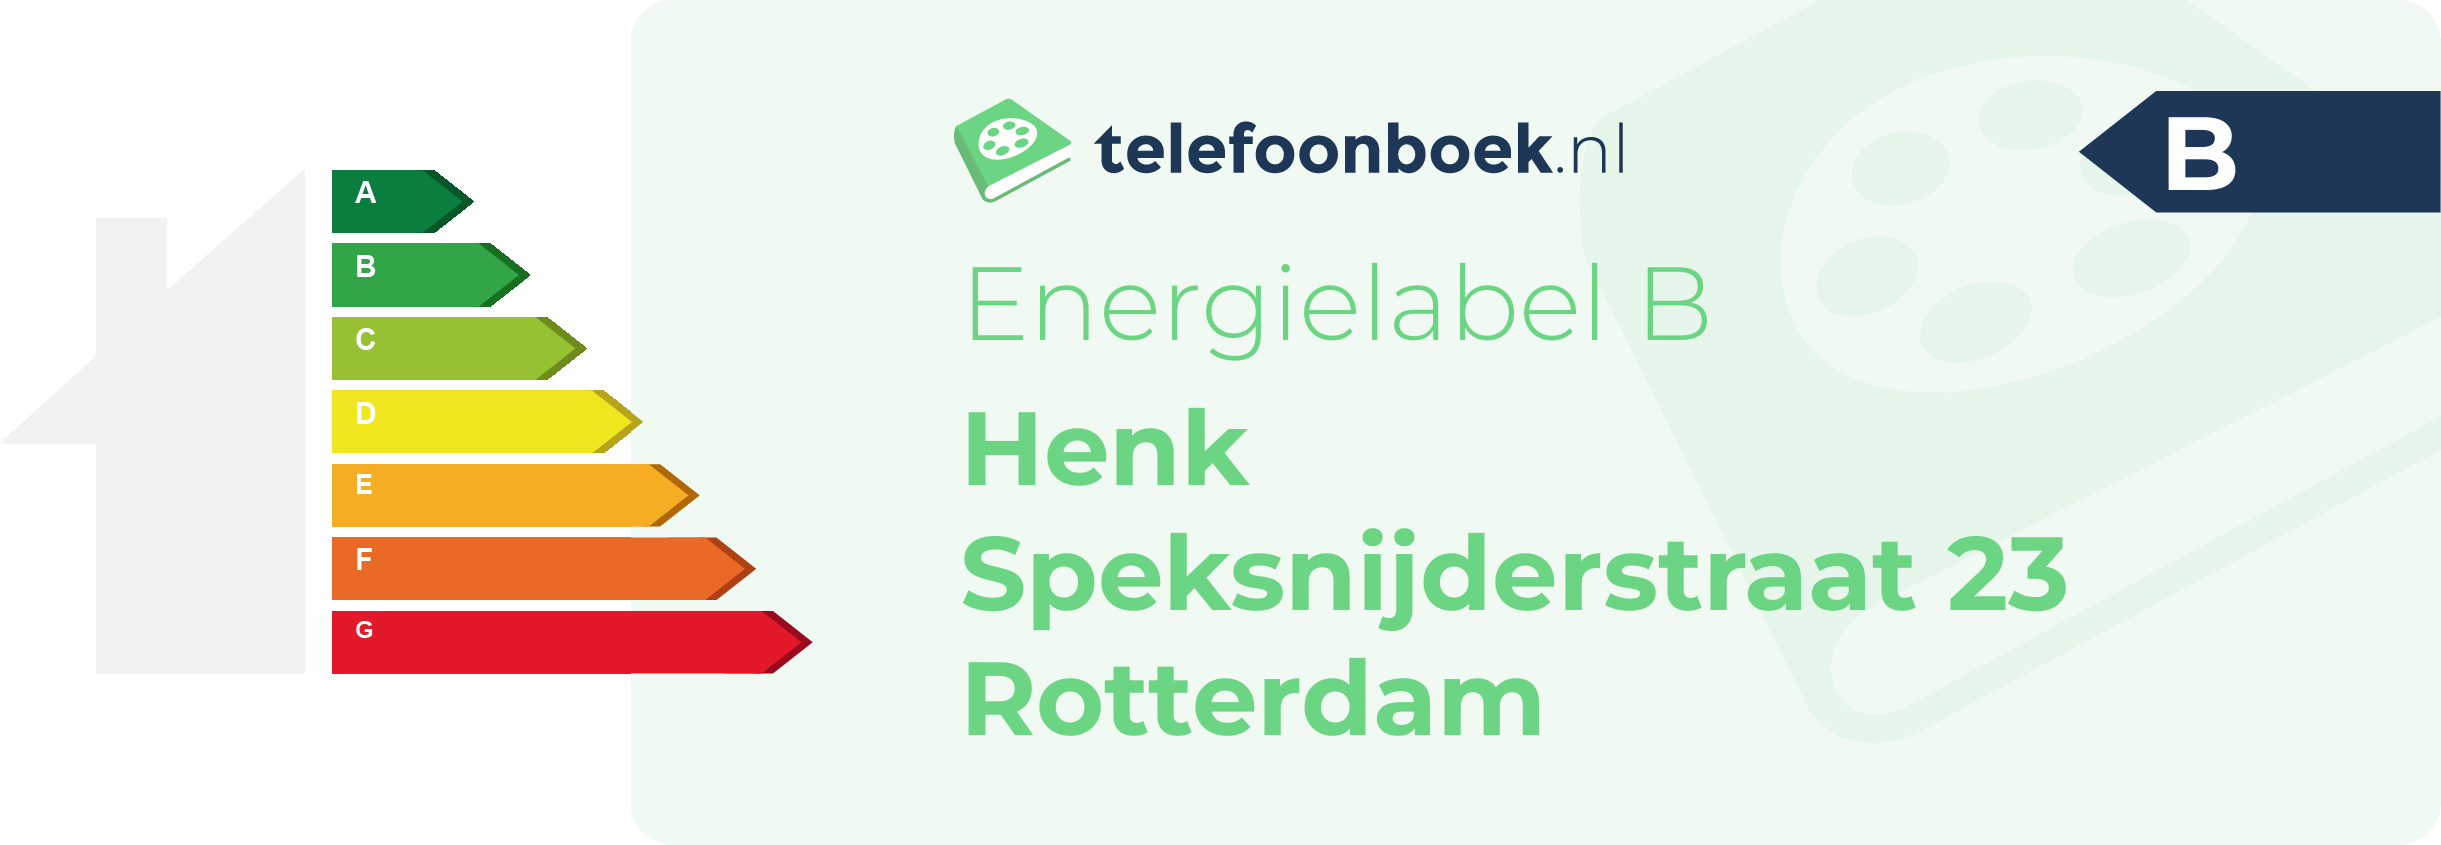 Energielabel Henk Speksnijderstraat 23 Rotterdam